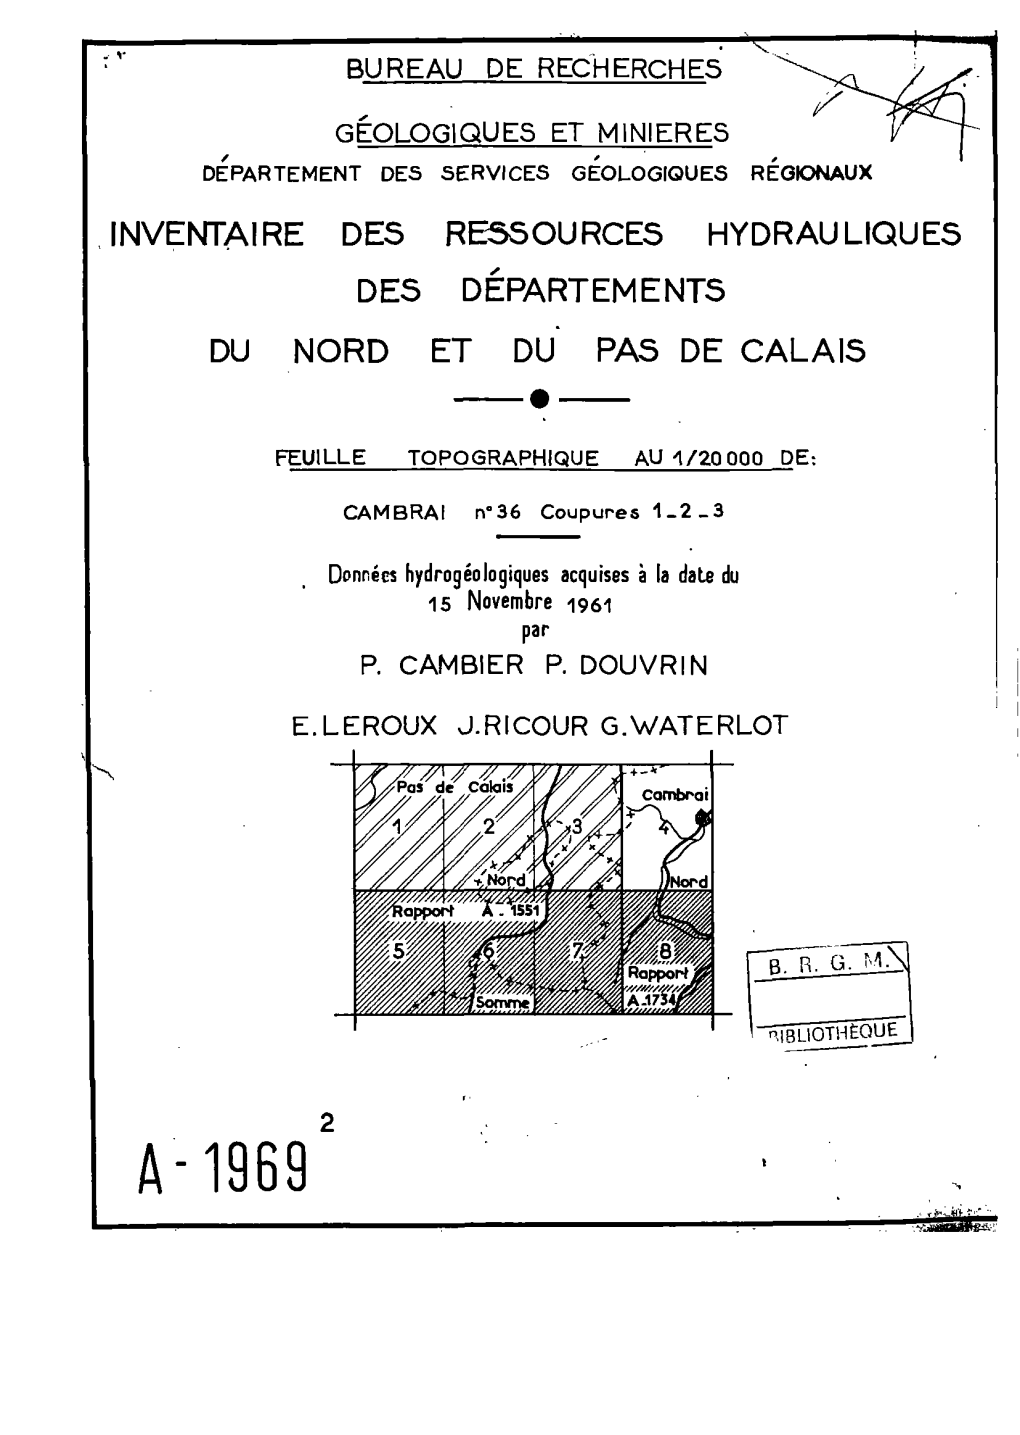 A- 1969 B.R.G.M, Inventaire Des Ressources Hydrauliques